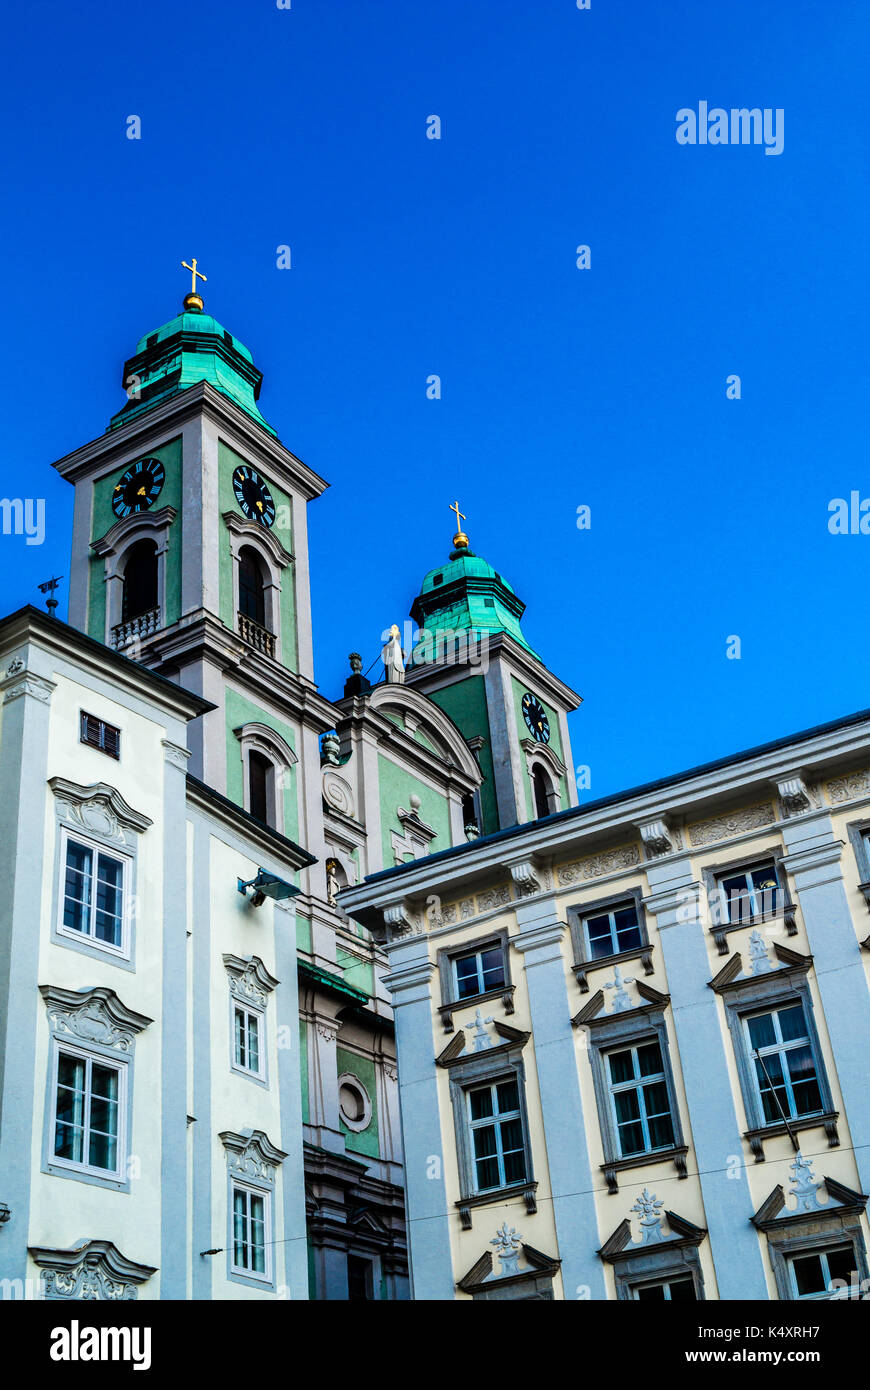 Vecchia chiesa di Linz in Austria, con un aqua, blu la facciata esterna. Un luogo di interesse e un monumentale pezzo di arte e costruzione architettonica Foto Stock